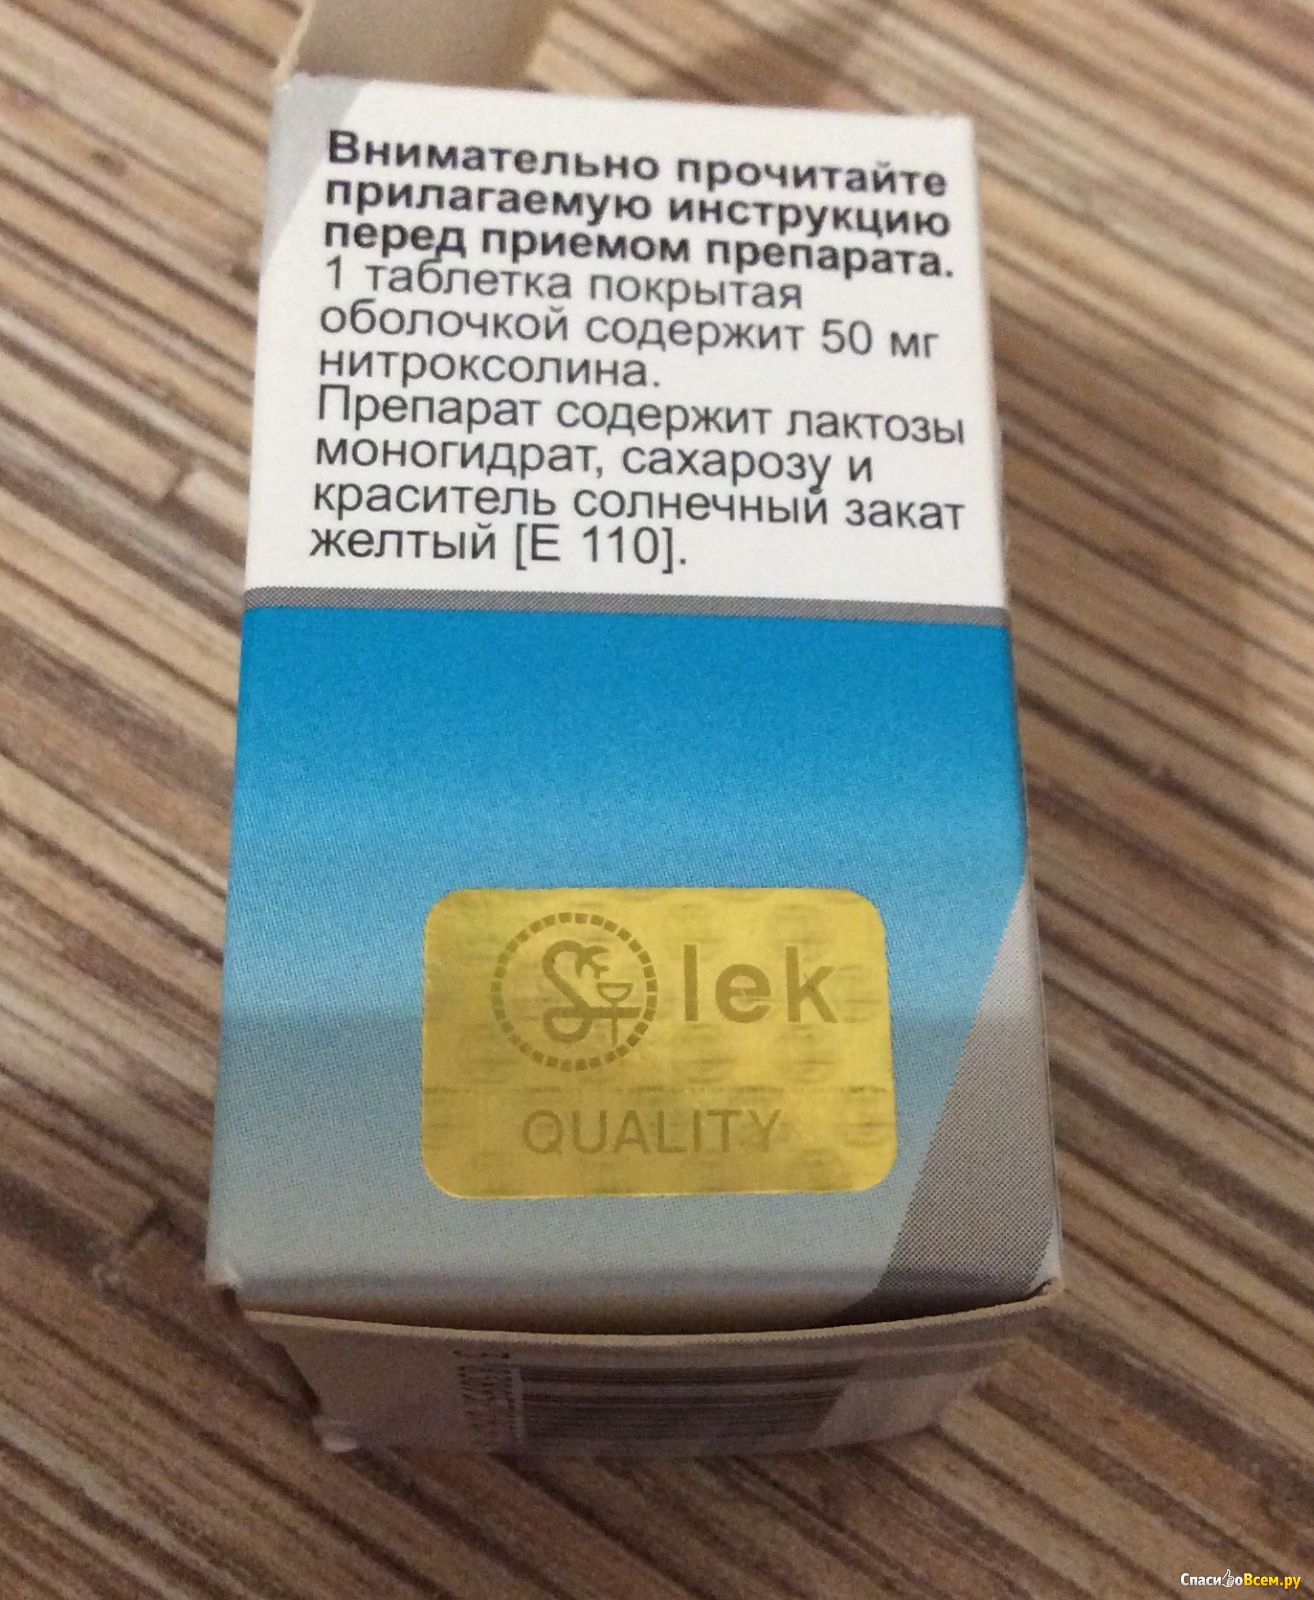 Нитроксолин в жёлтой упаковке. 5-НОК производитель Страна. Нитроксолин (5-НОК)Ветеринария. 5 НОК аналоги.